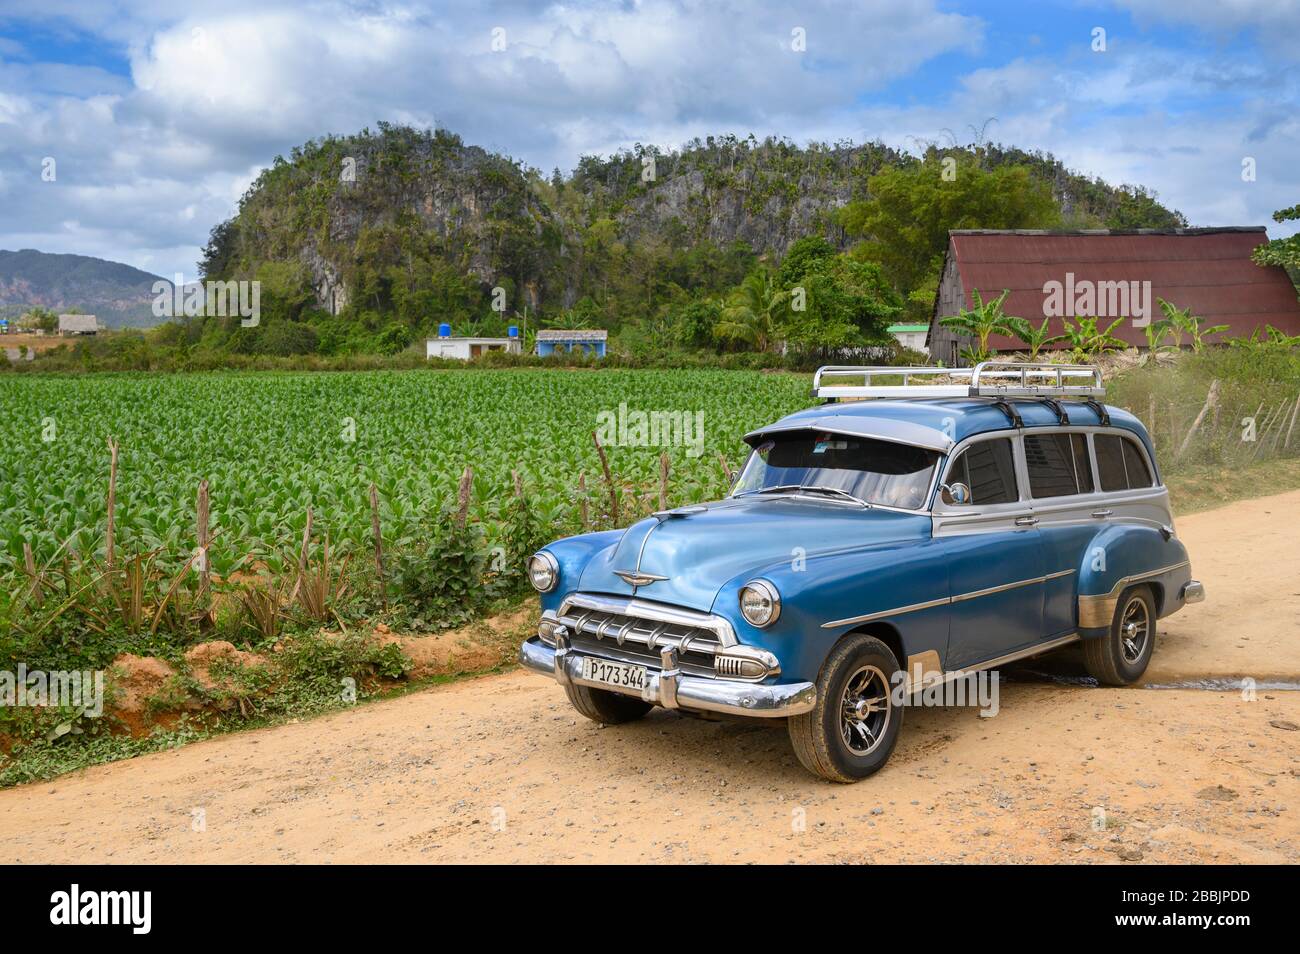 Vagón chevrolet Vintage, Vinales, Provincia de Pinar del Río, Cuba Foto de stock